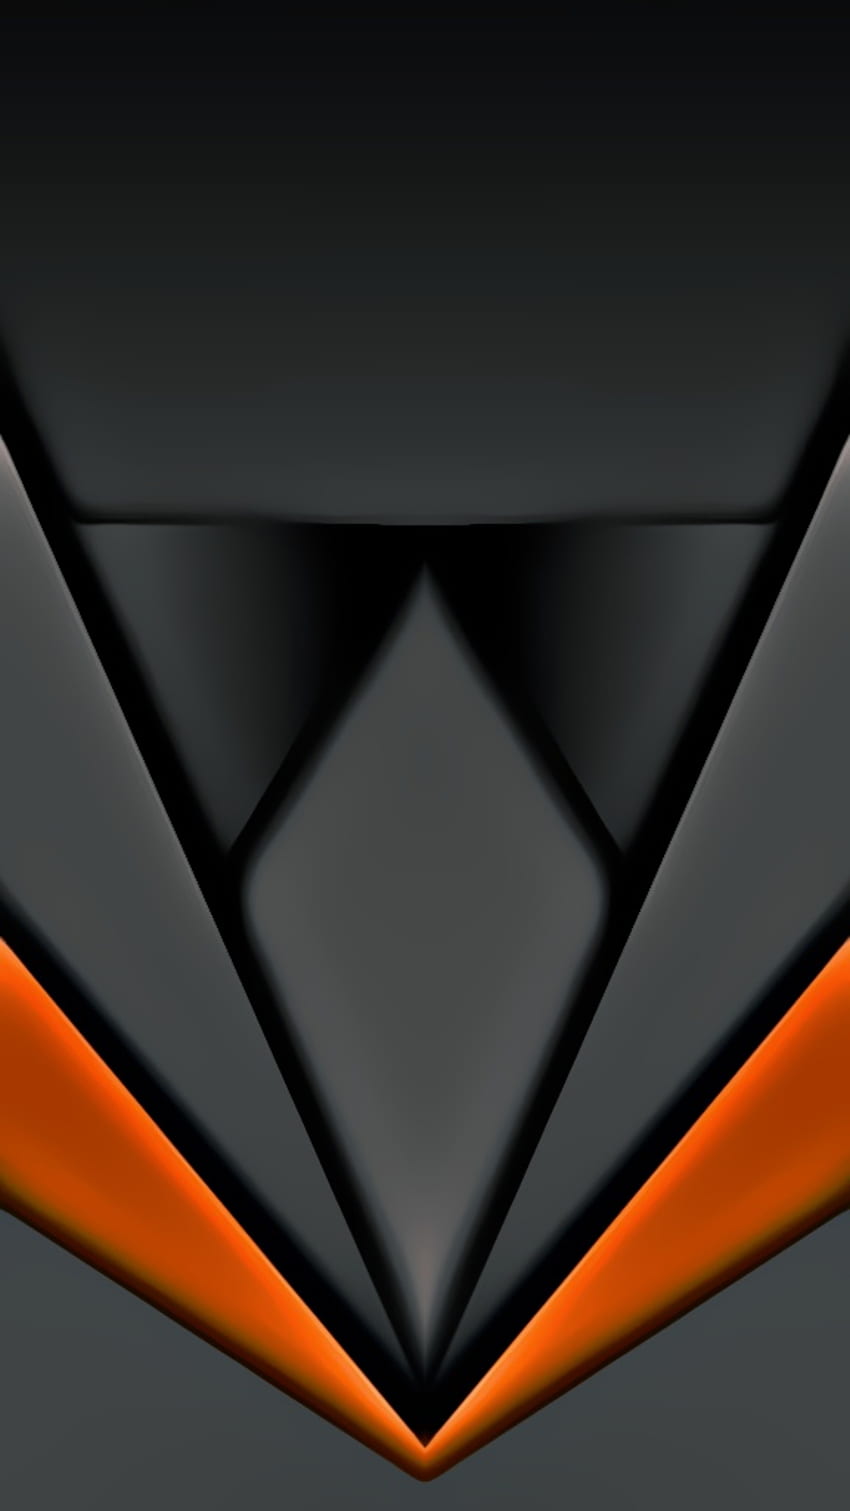 สีดำ สีเทา สีส้ม นีออน ดิจิตอล ใหม่ วัสดุ รูปร่าง เท่ห์ การออกแบบ เรขาคณิต รูปแบบ นามธรรม เส้น วอลล์เปเปอร์โทรศัพท์ HD